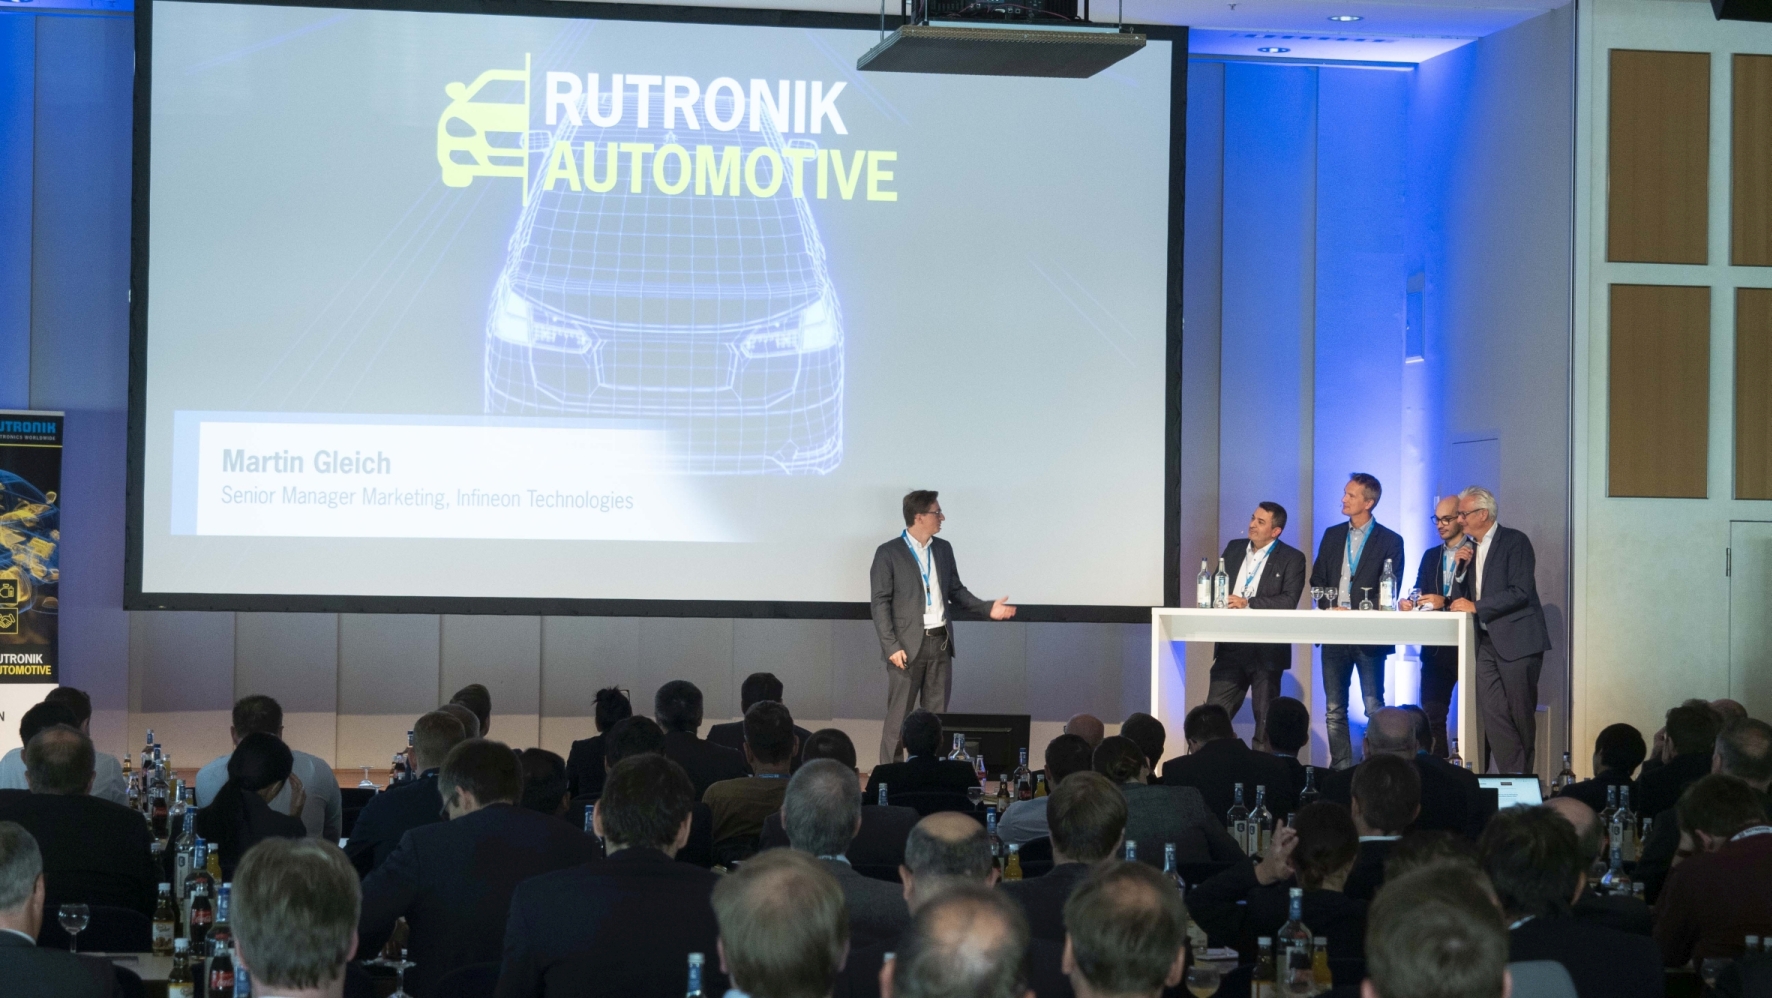 Zweiter Rutronik-Automotive-Congress in Pforzheim